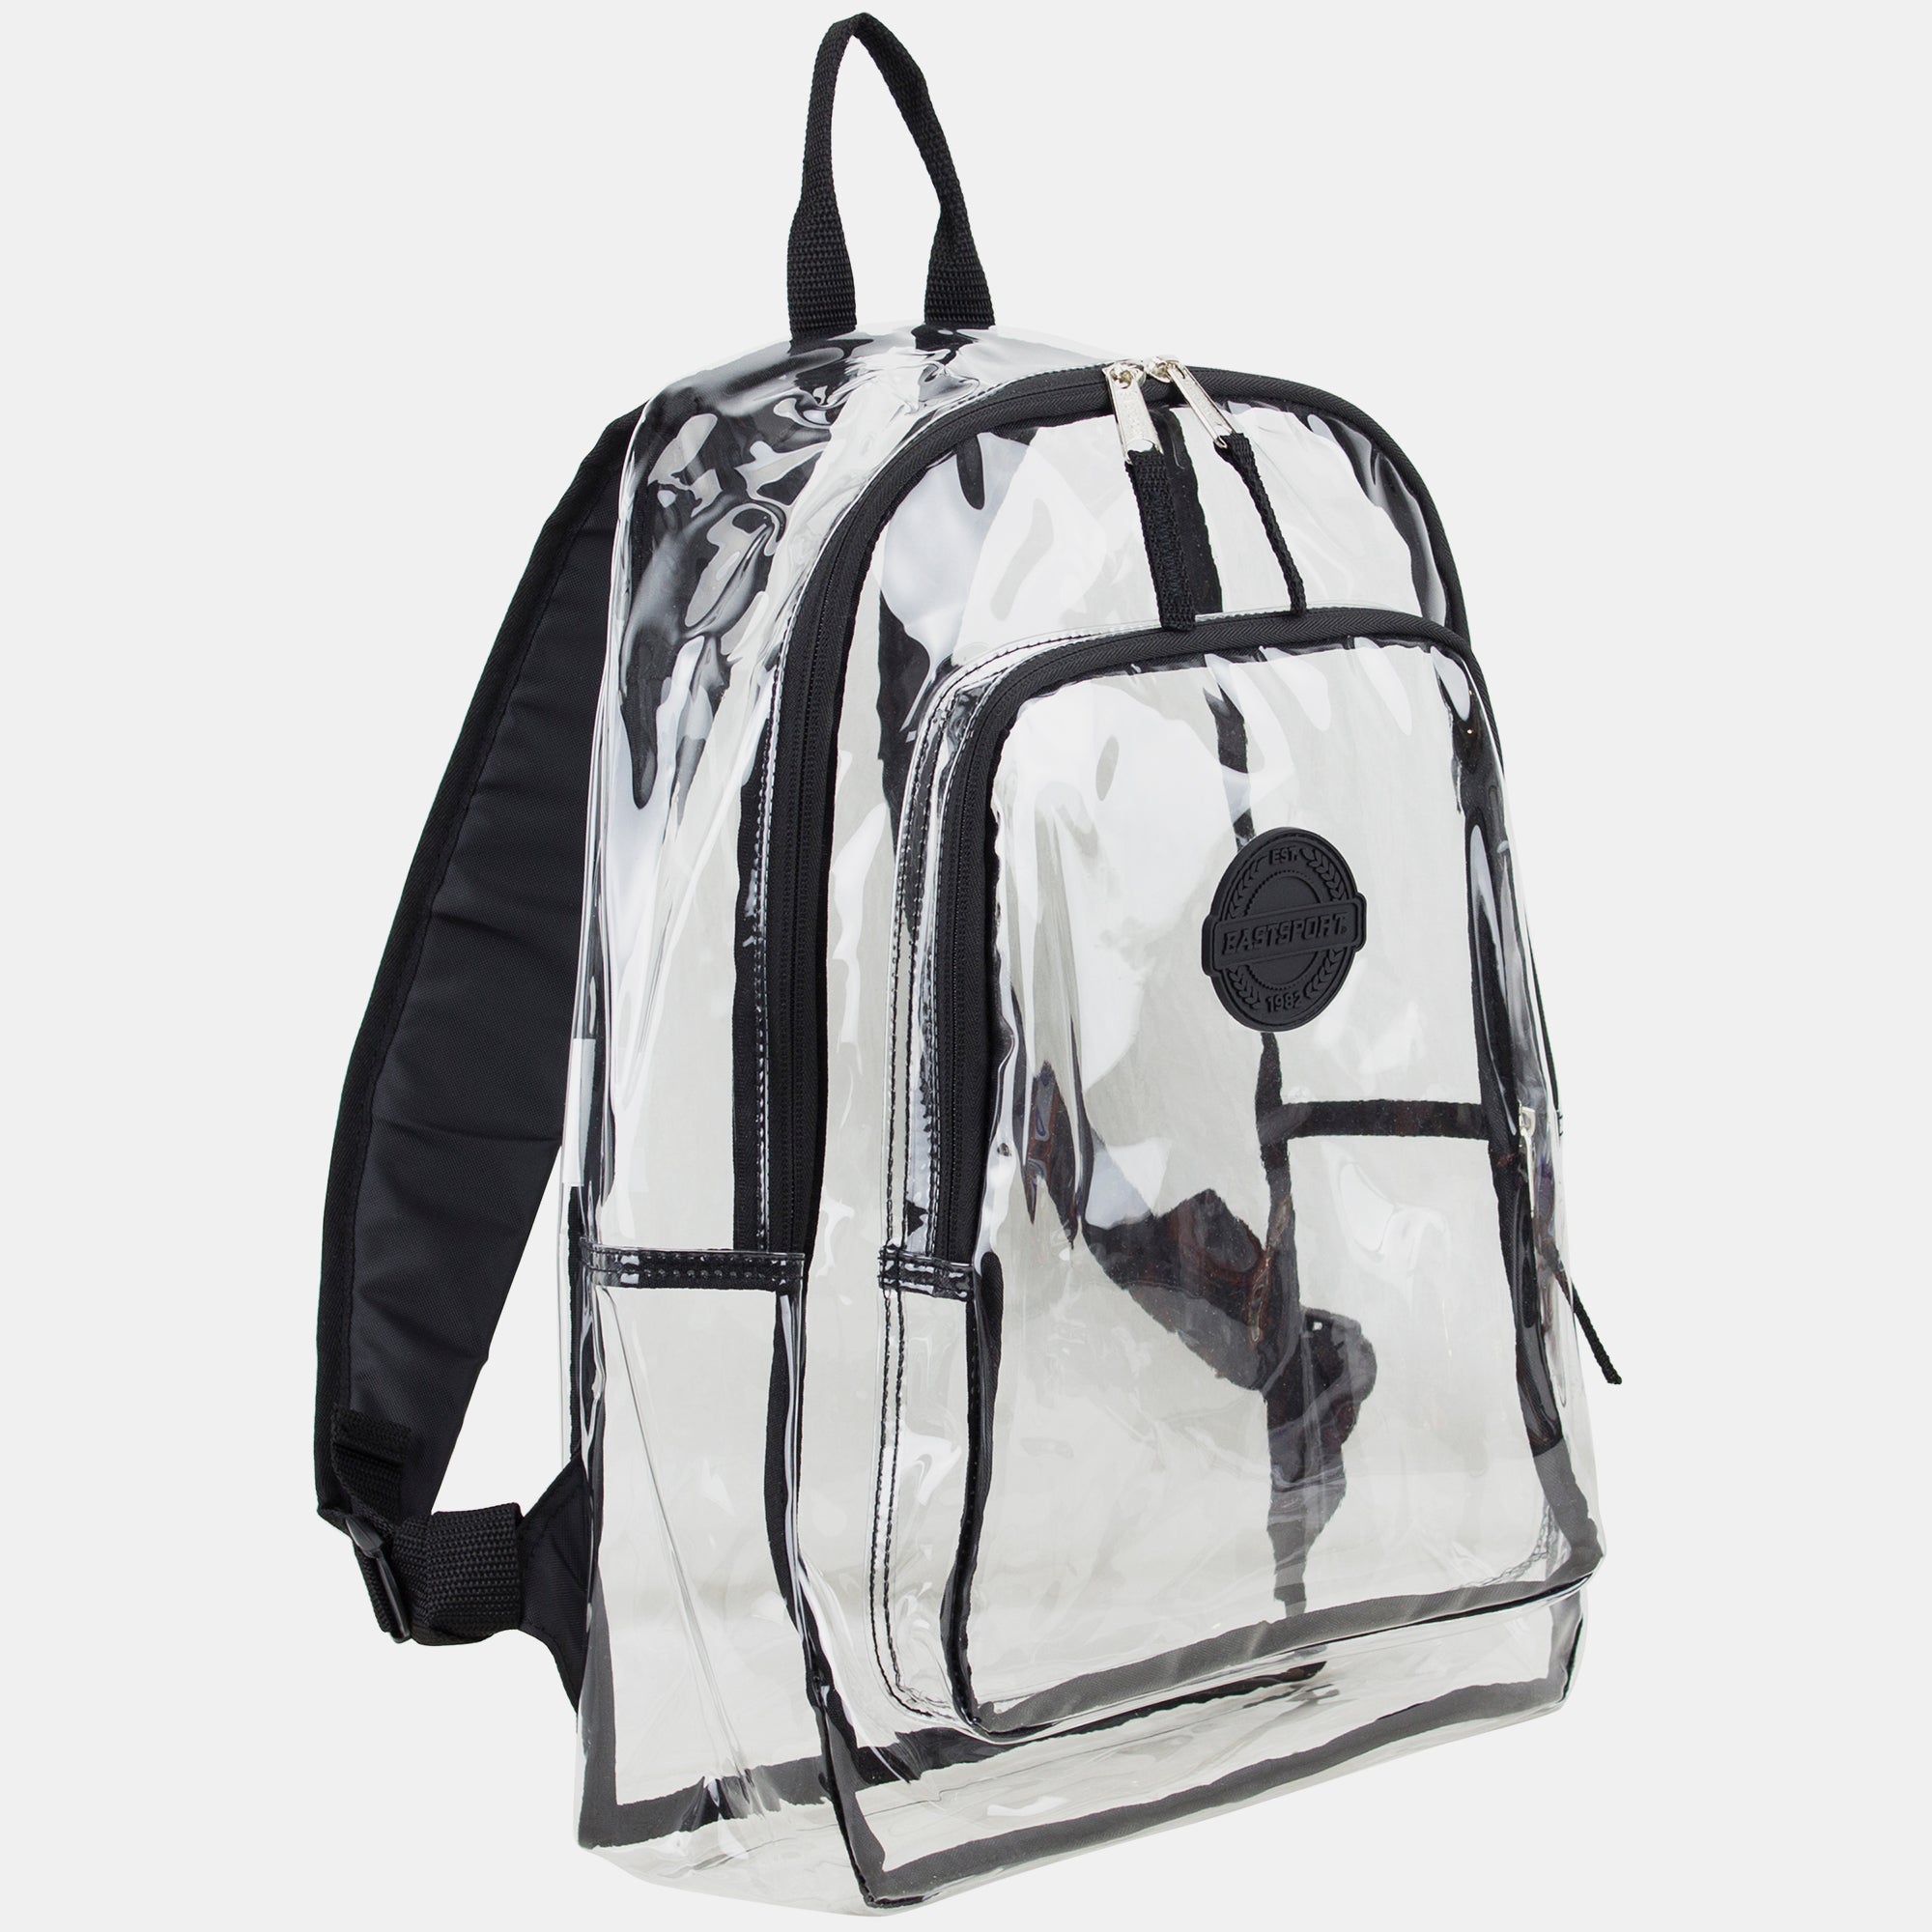 Eastsport Transparent Backpack with Front Pocket